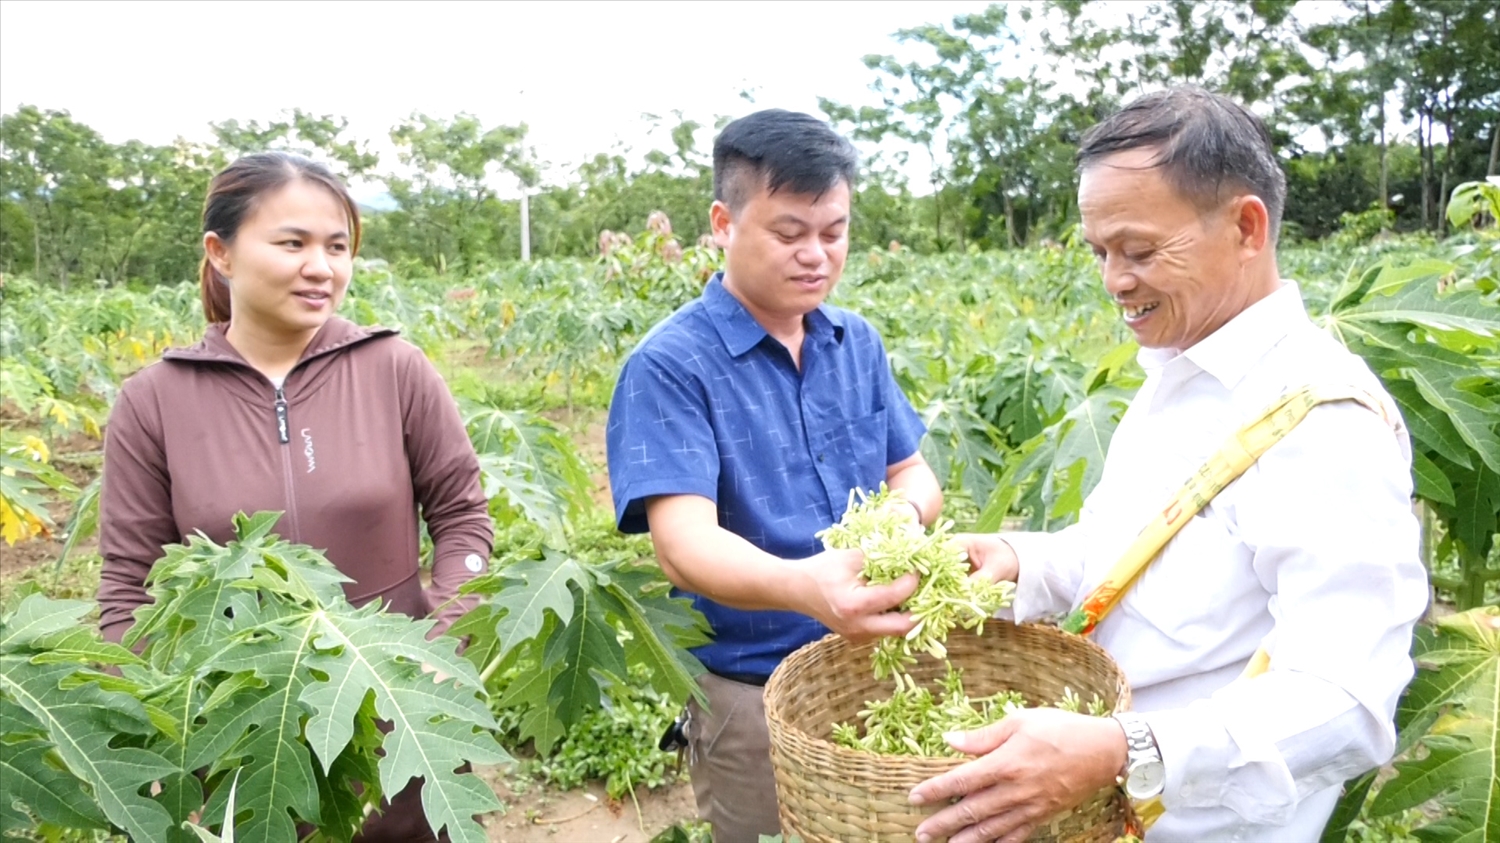 Cán bộ Hợp tác xã Nông nghiệp An toàn và Hữu cơ Lang Chánh cùng lãnh đạo xã Trí Nang thăm vườn đu đủ của ông Hạnh.